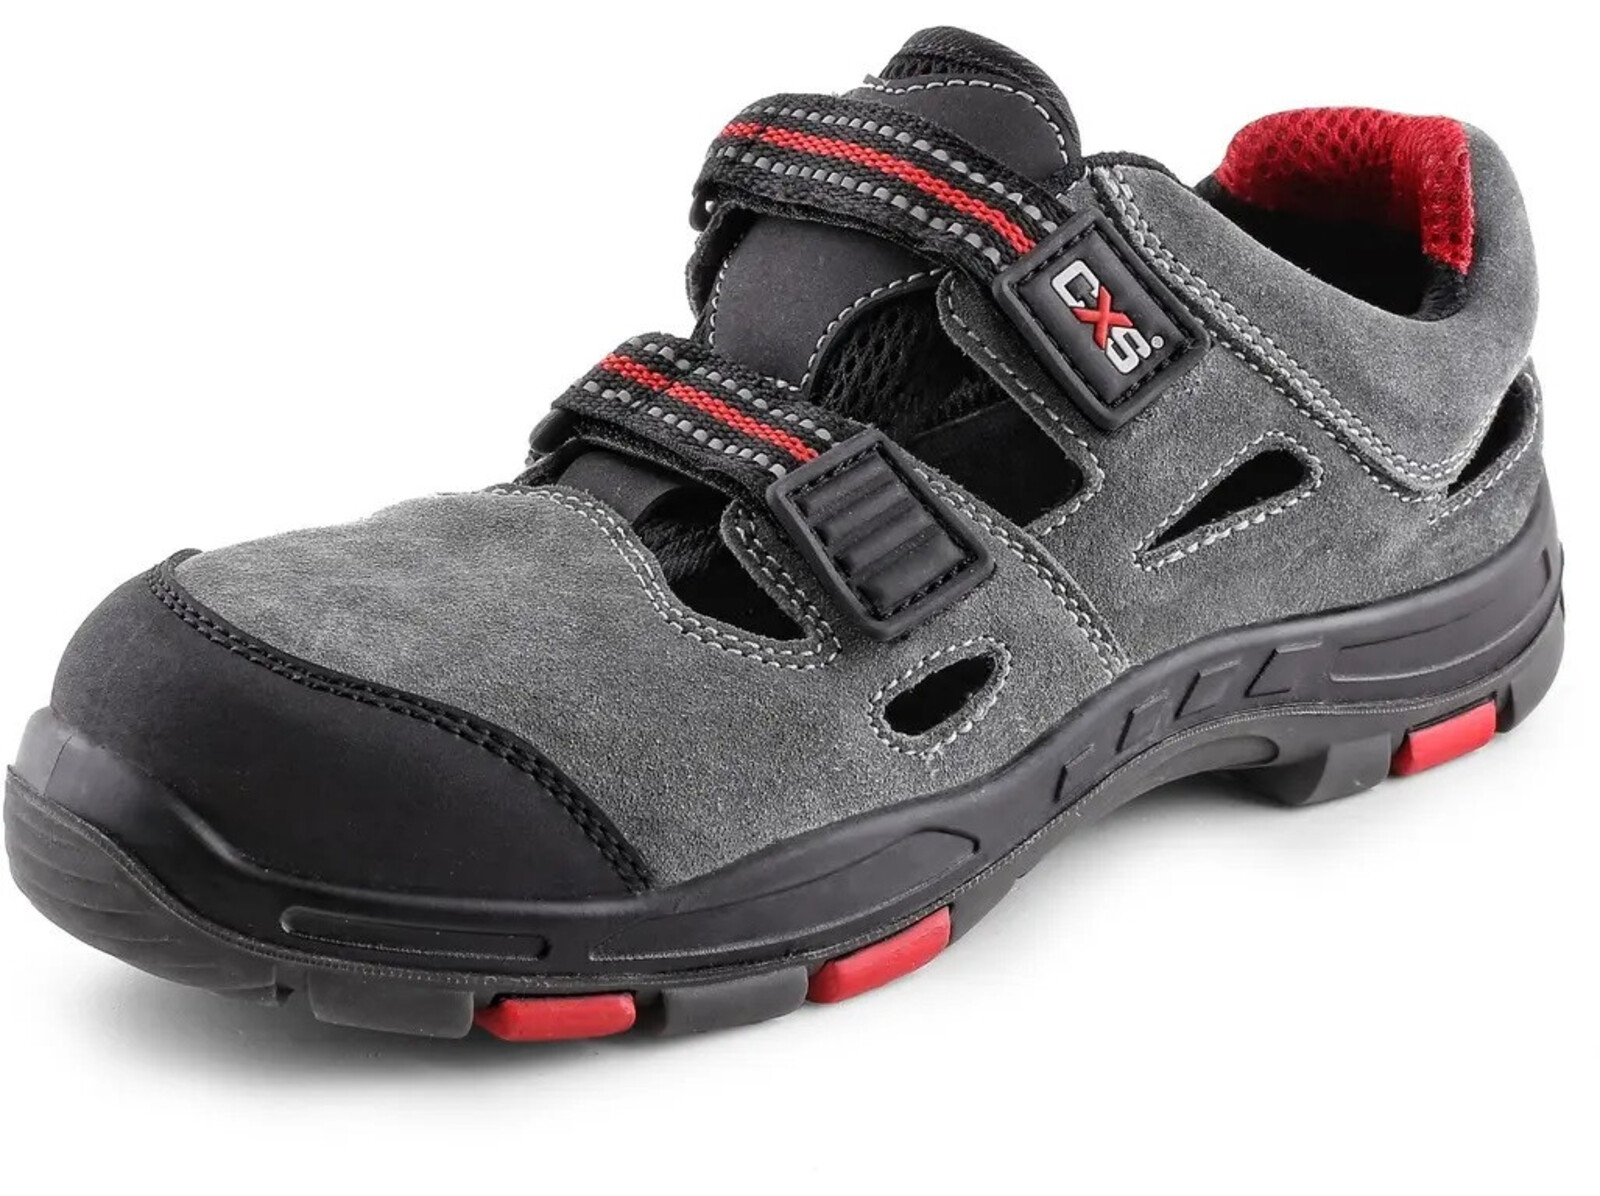 Bezpečnostné sandále CXS Rock Phyllite S1P SRA HRO MF - veľkosť: 38, farba: sivá/červená